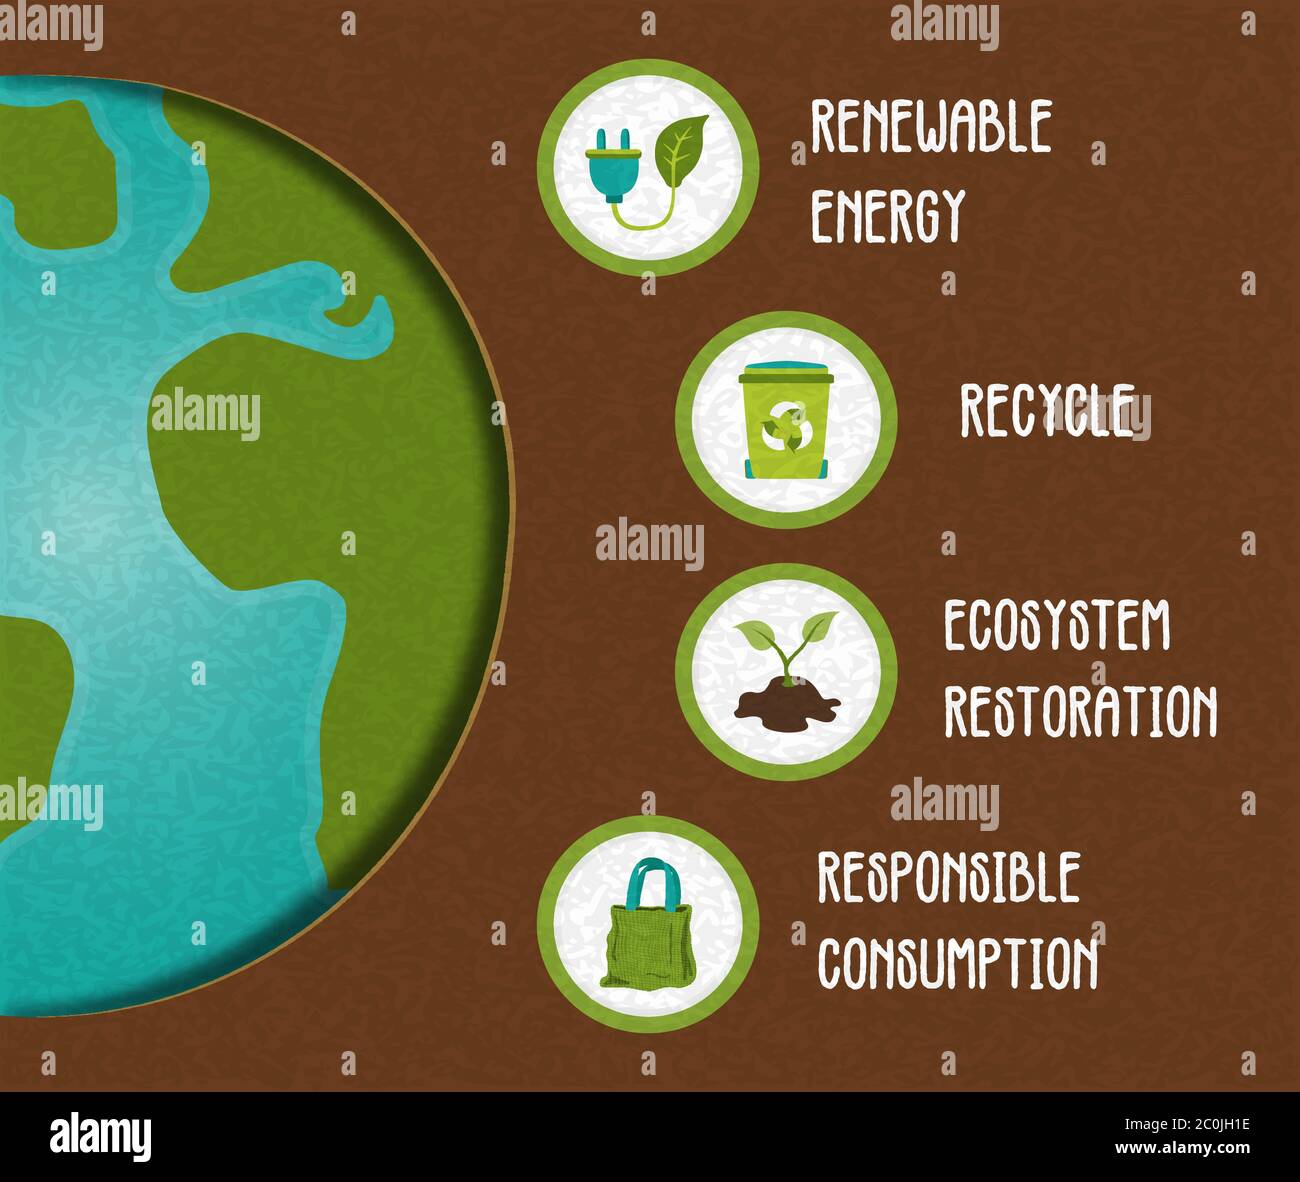 Modello infografico ecocompatibile per l'aiuto al pianeta verde, l'illustrazione dell'ambiente educativo include l'energia rinnovabile, il riciclo e la borsa di carta icona co Illustrazione Vettoriale